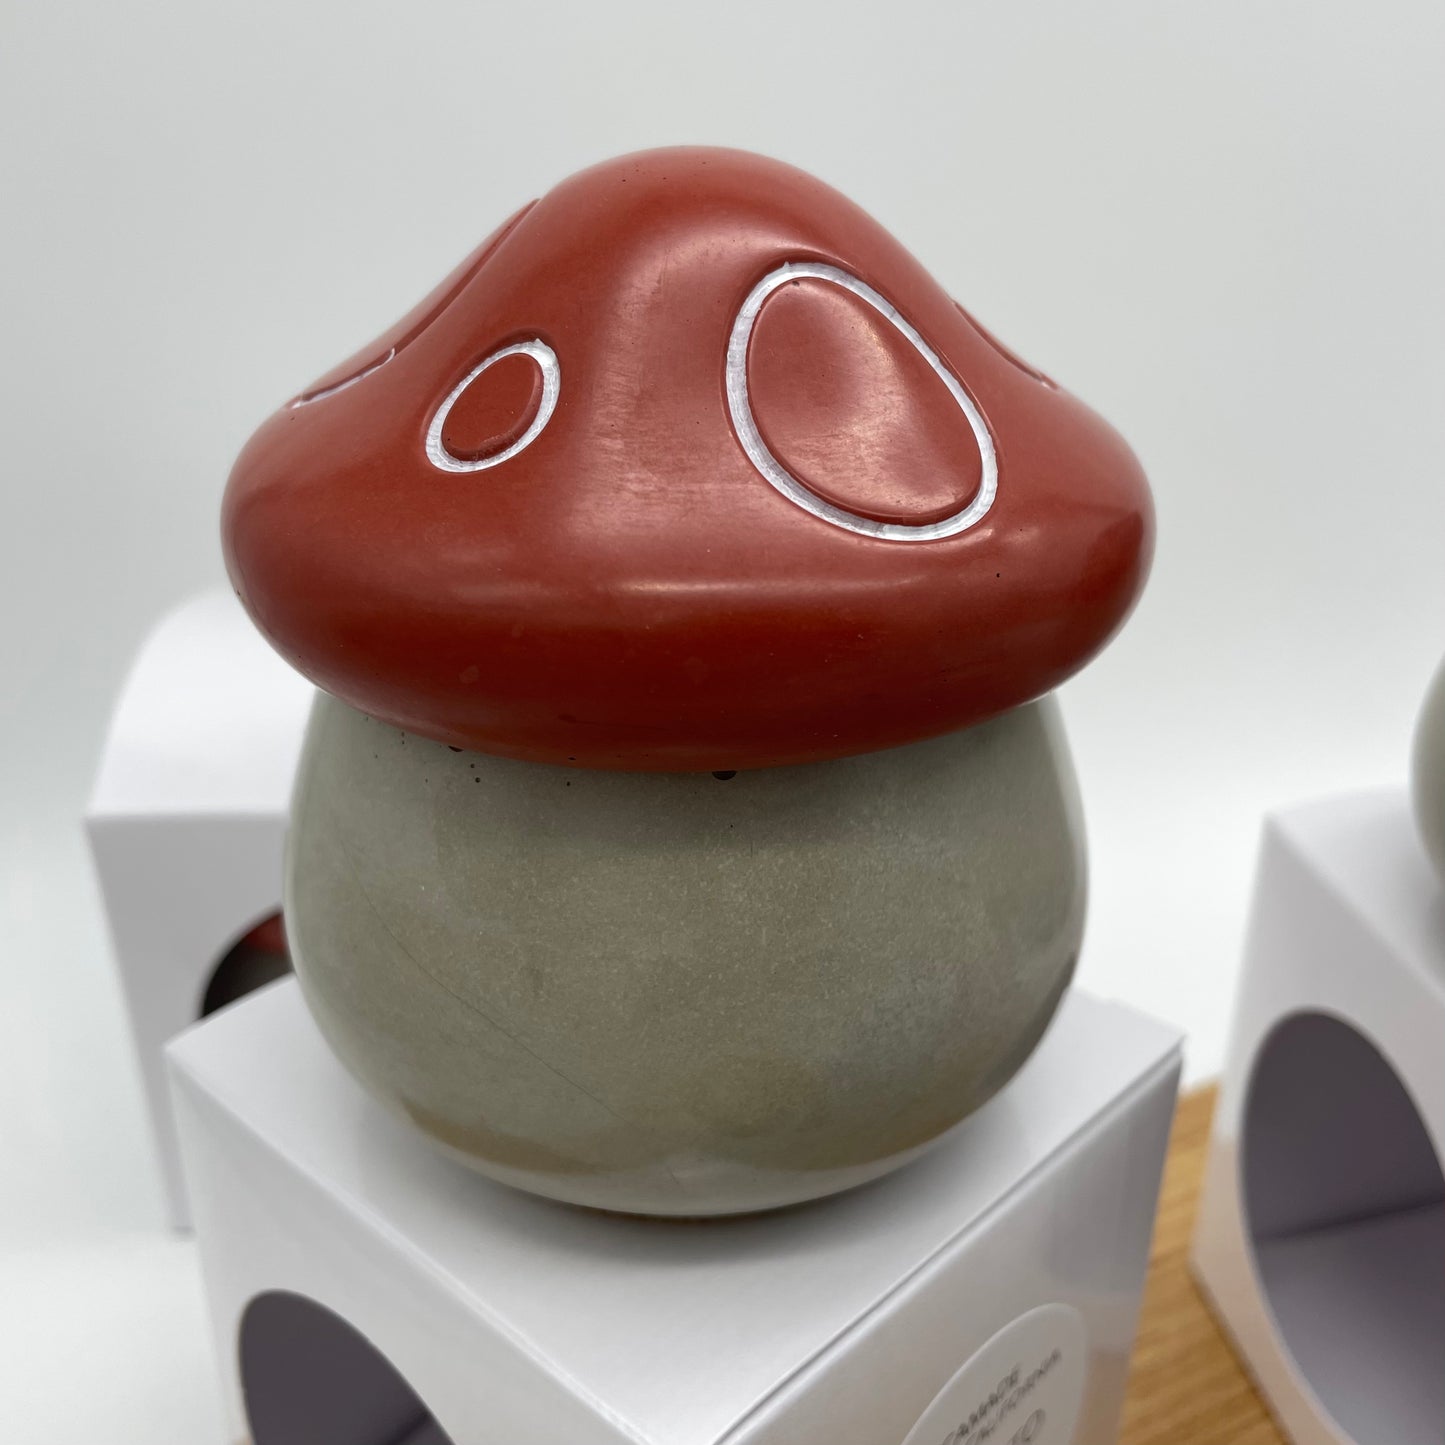 Fun Guy (fungi) Candle Jar